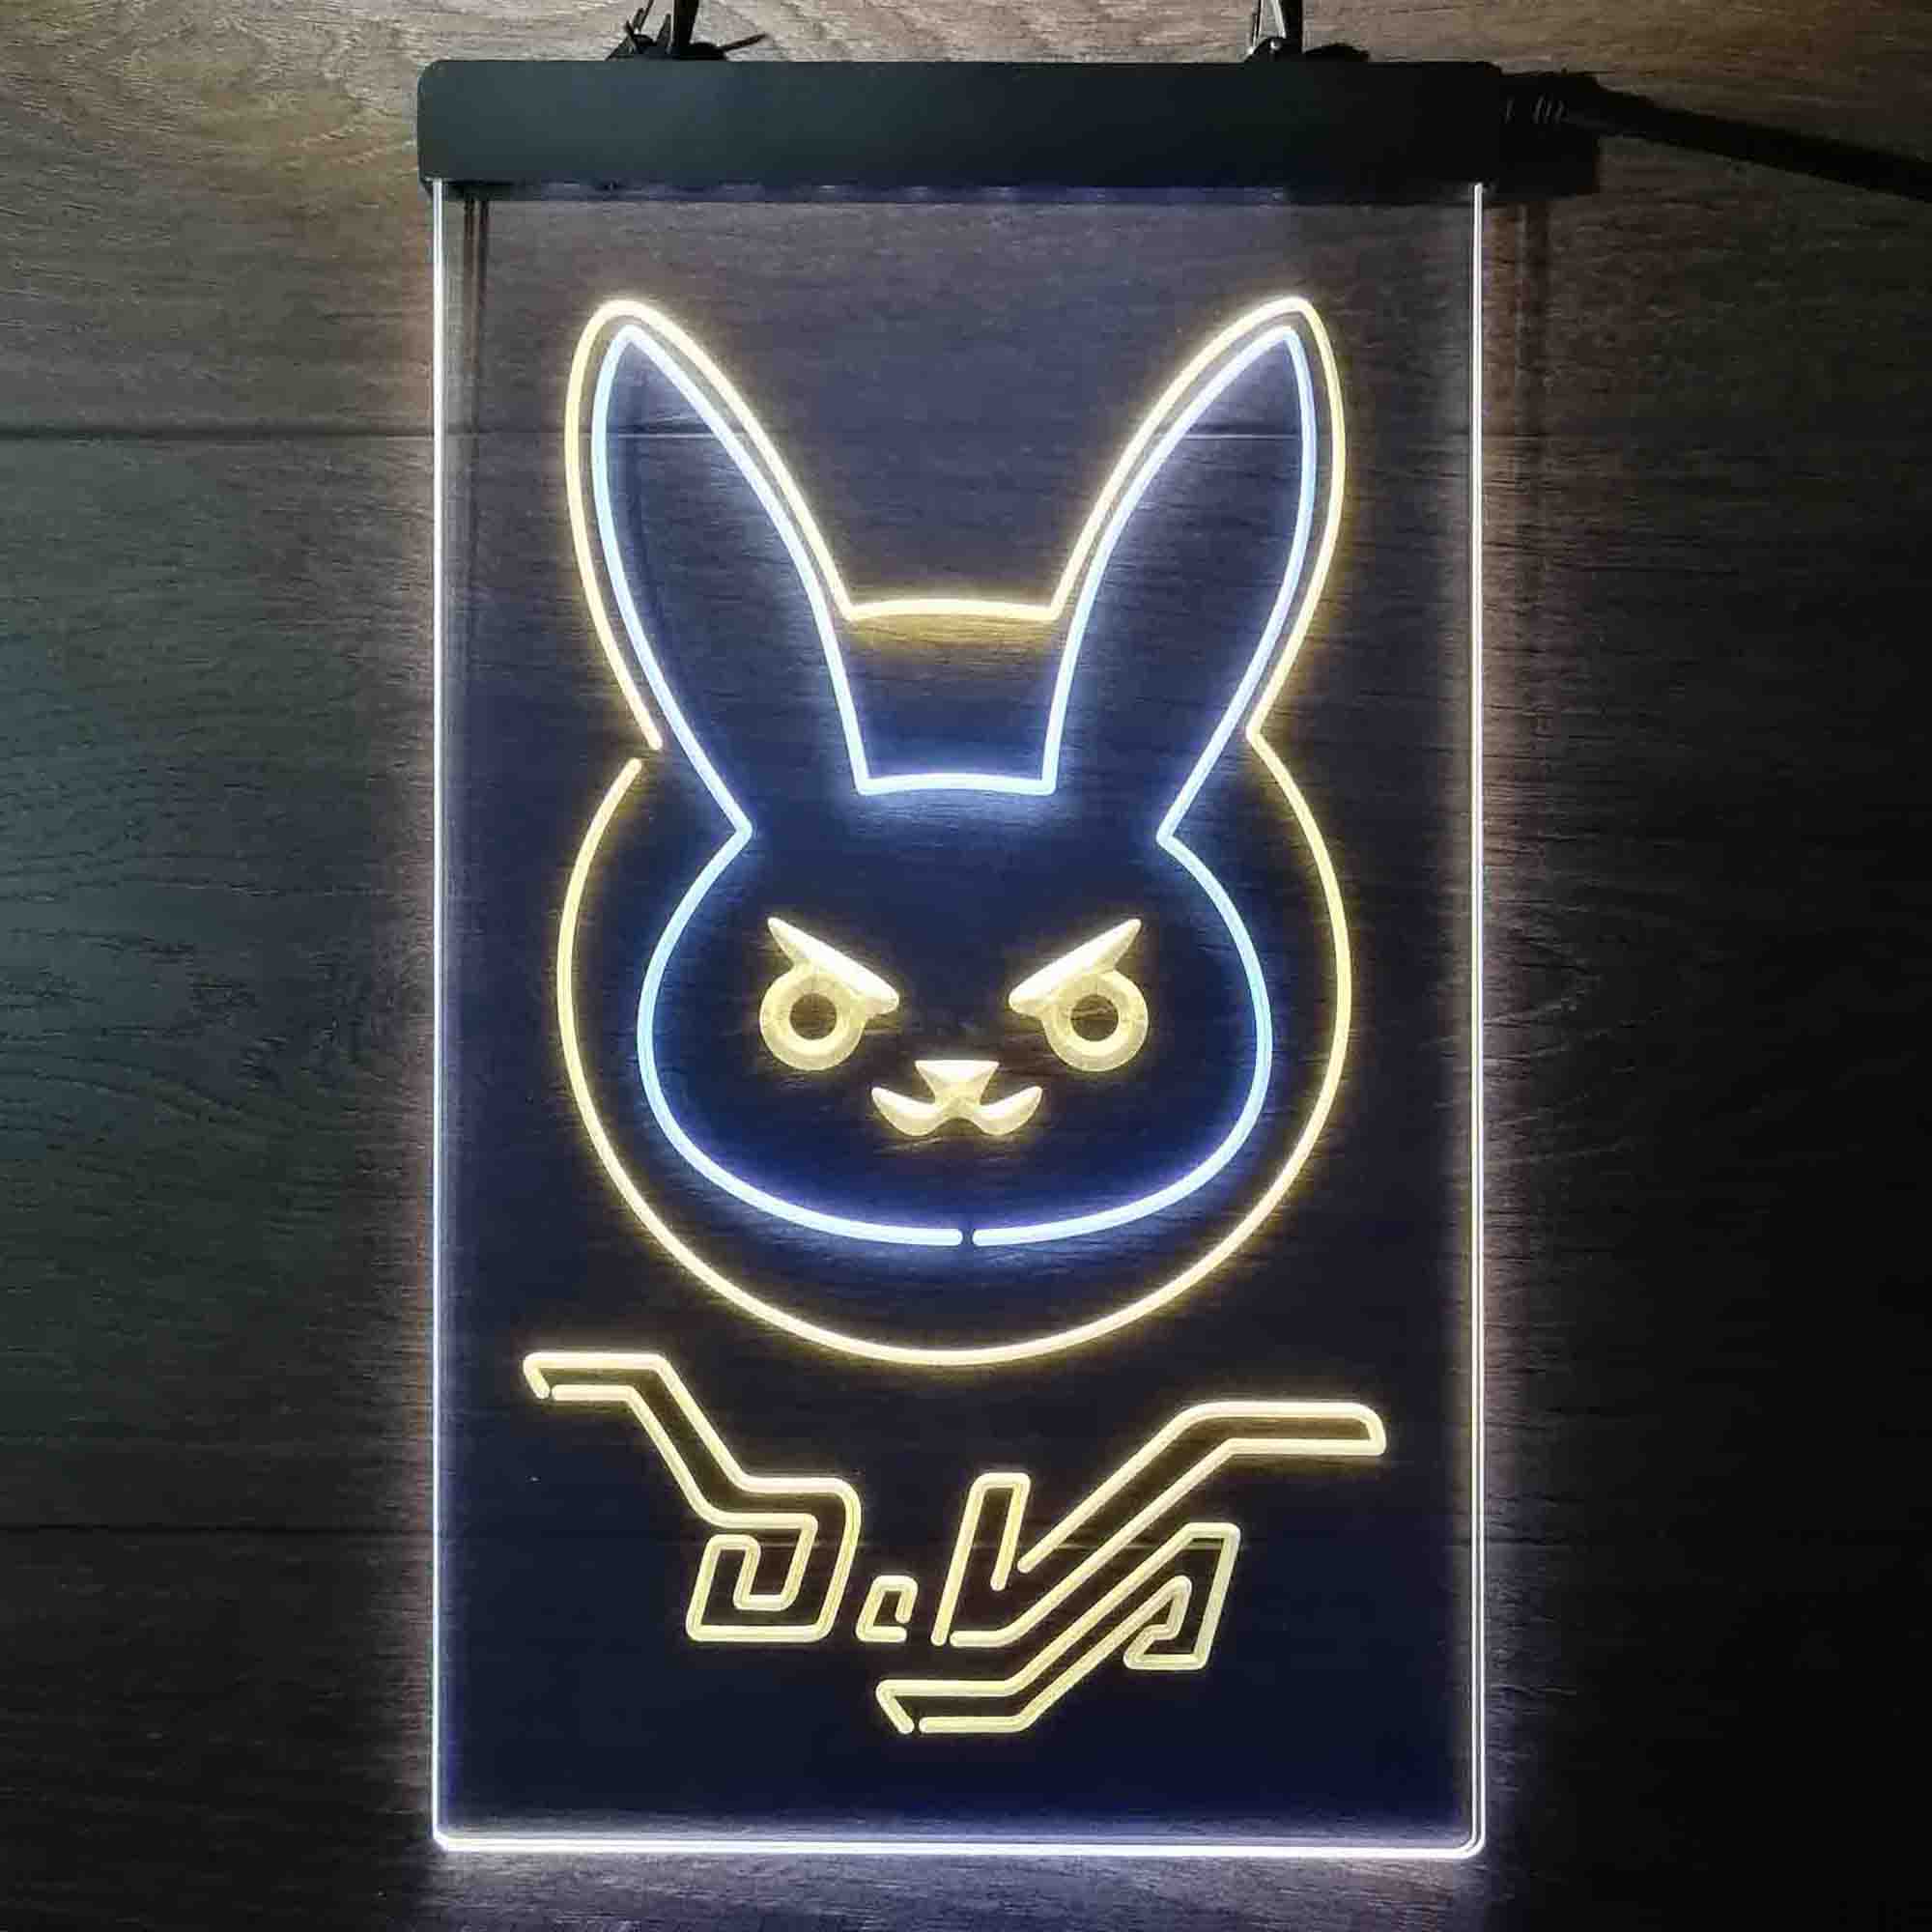 Overwatch Dva D.va Bunny Game Room Neon Light LED Sign